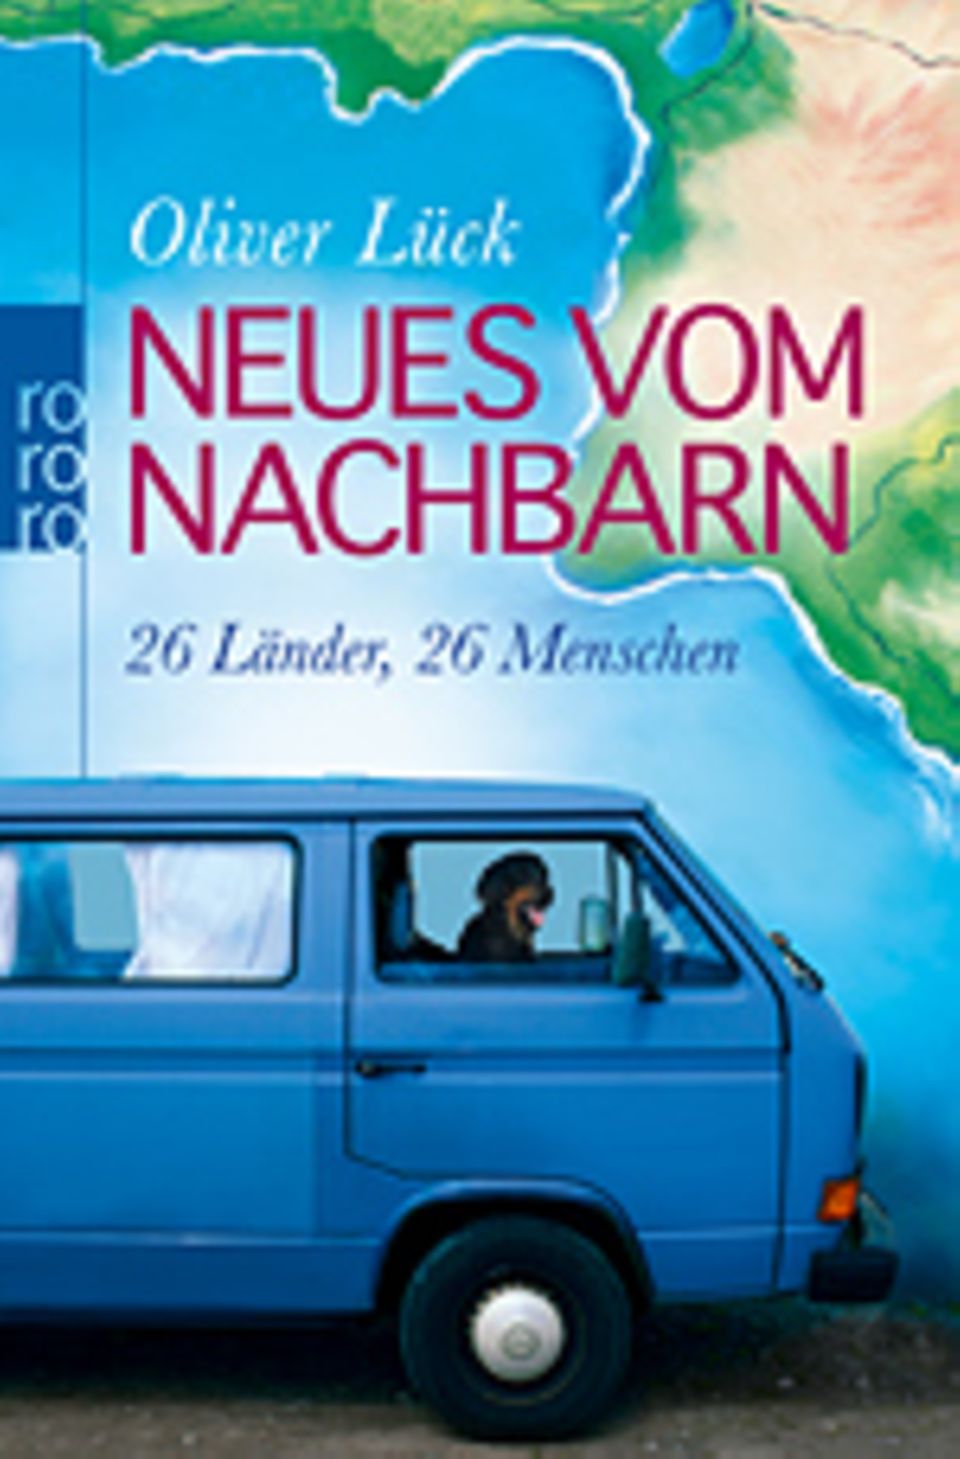 Interview: "Neues vom Nachbarn - 26 Länder, 26 Menschen" ist im Rowohlt Verlag erschienen